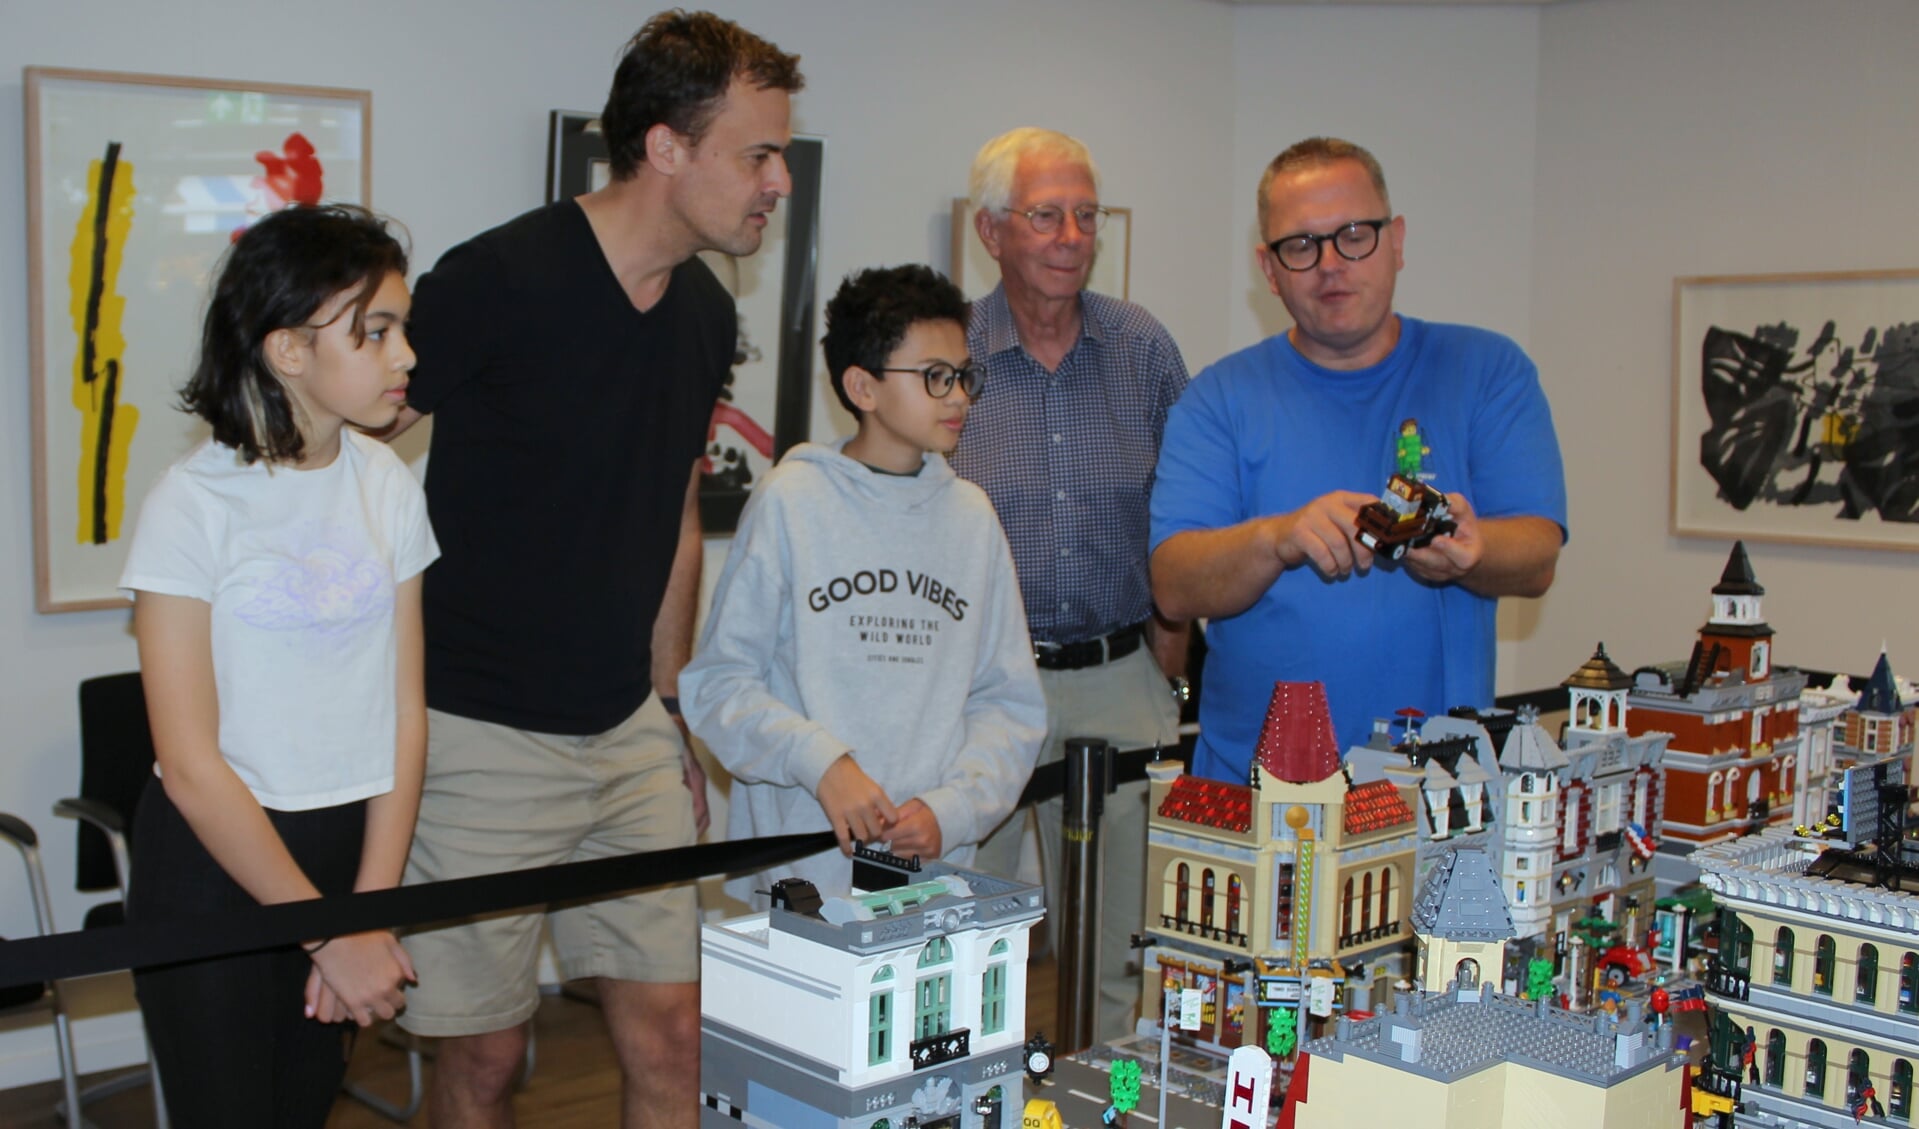 Veel belangstelling zaterdag voor het Lego-project in Boskoop. De familie Kok (li) en Wim Vermeulen luisteren aandachtig naar initiatiefnemer Iwan Vervoort (re).